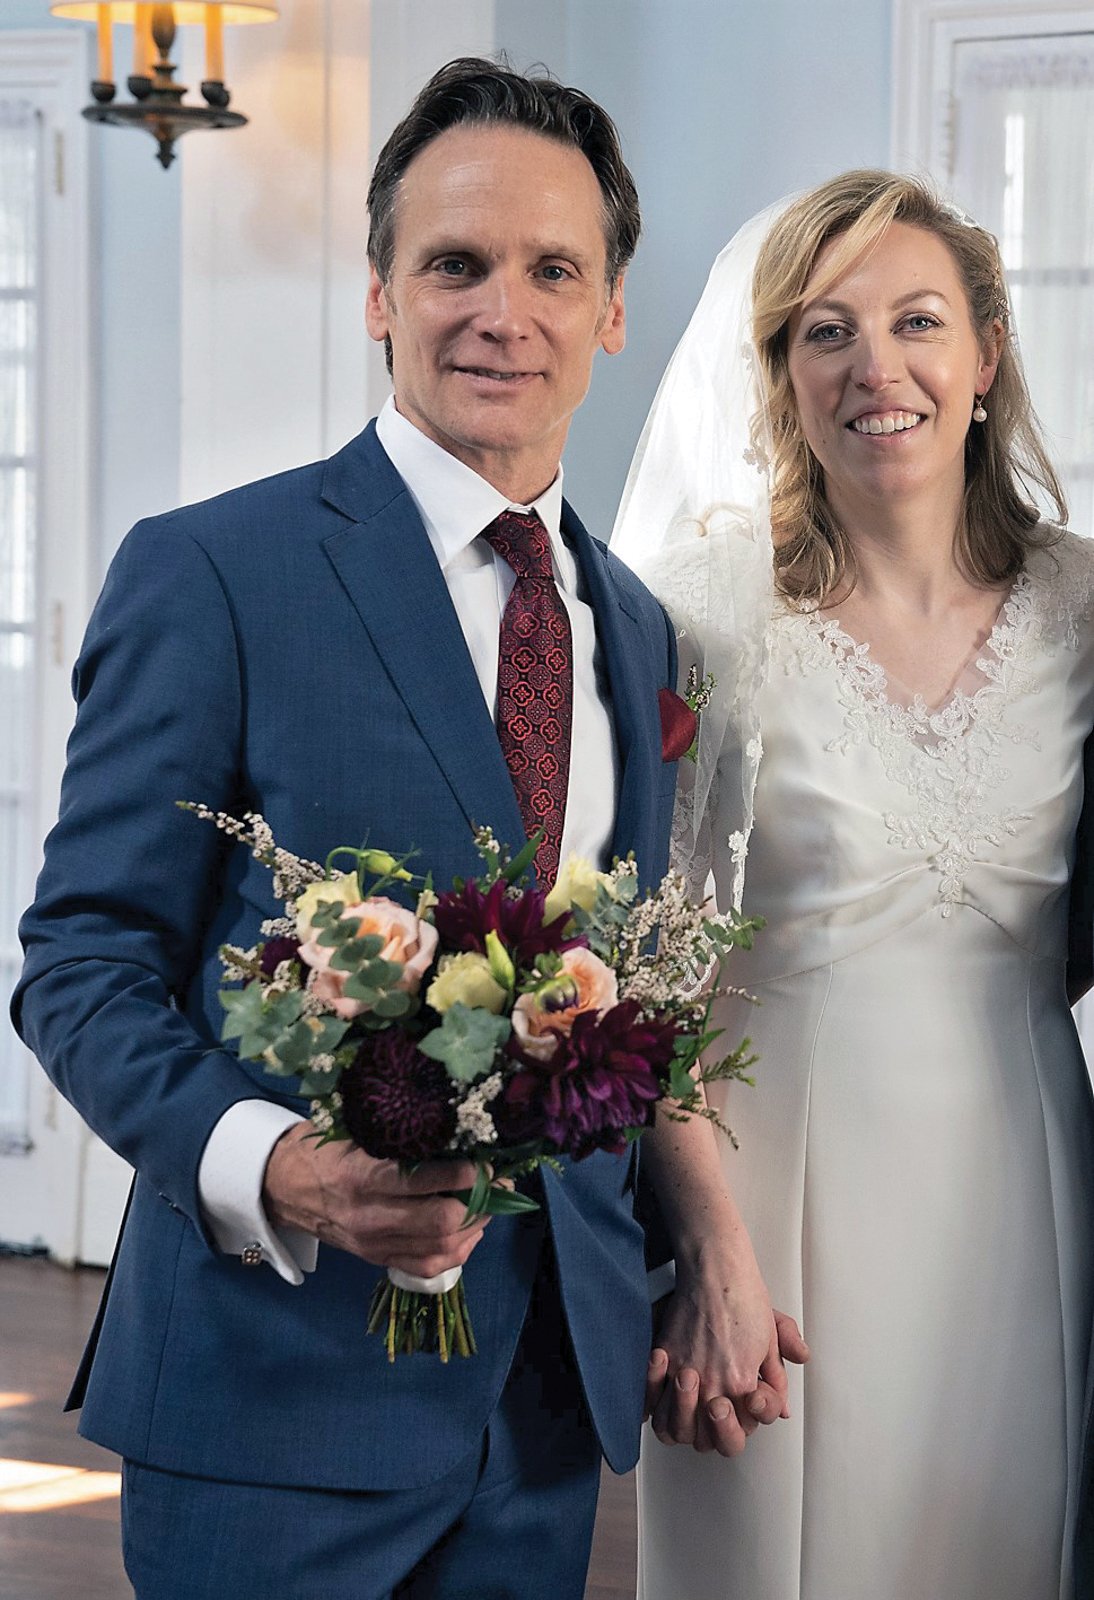 Carmel and John Wildman’s wedding, 28 September 2018.